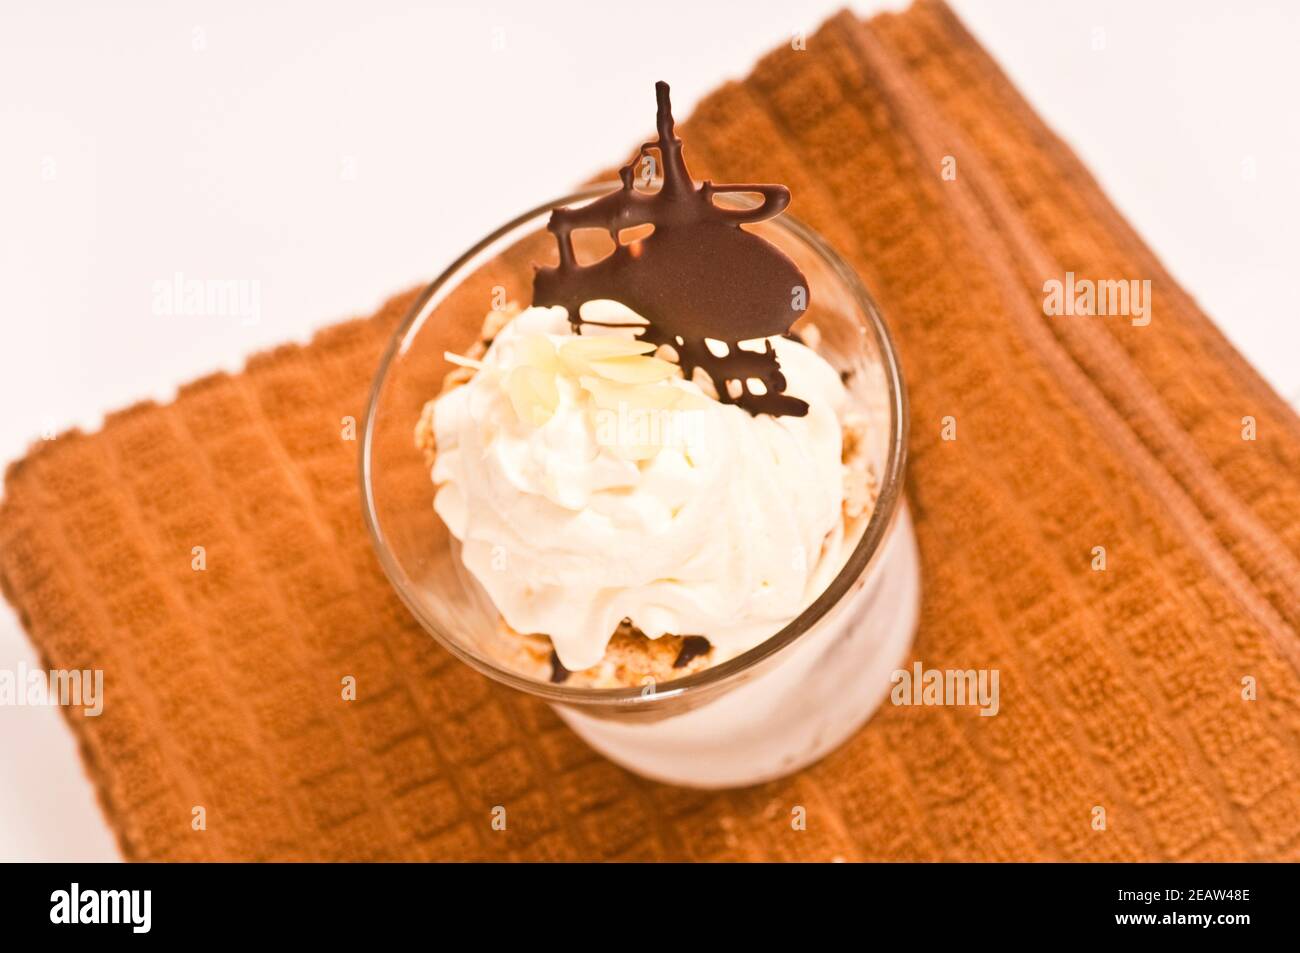 Baiser-EIS-Dessert mit Schokolade Foto Stock